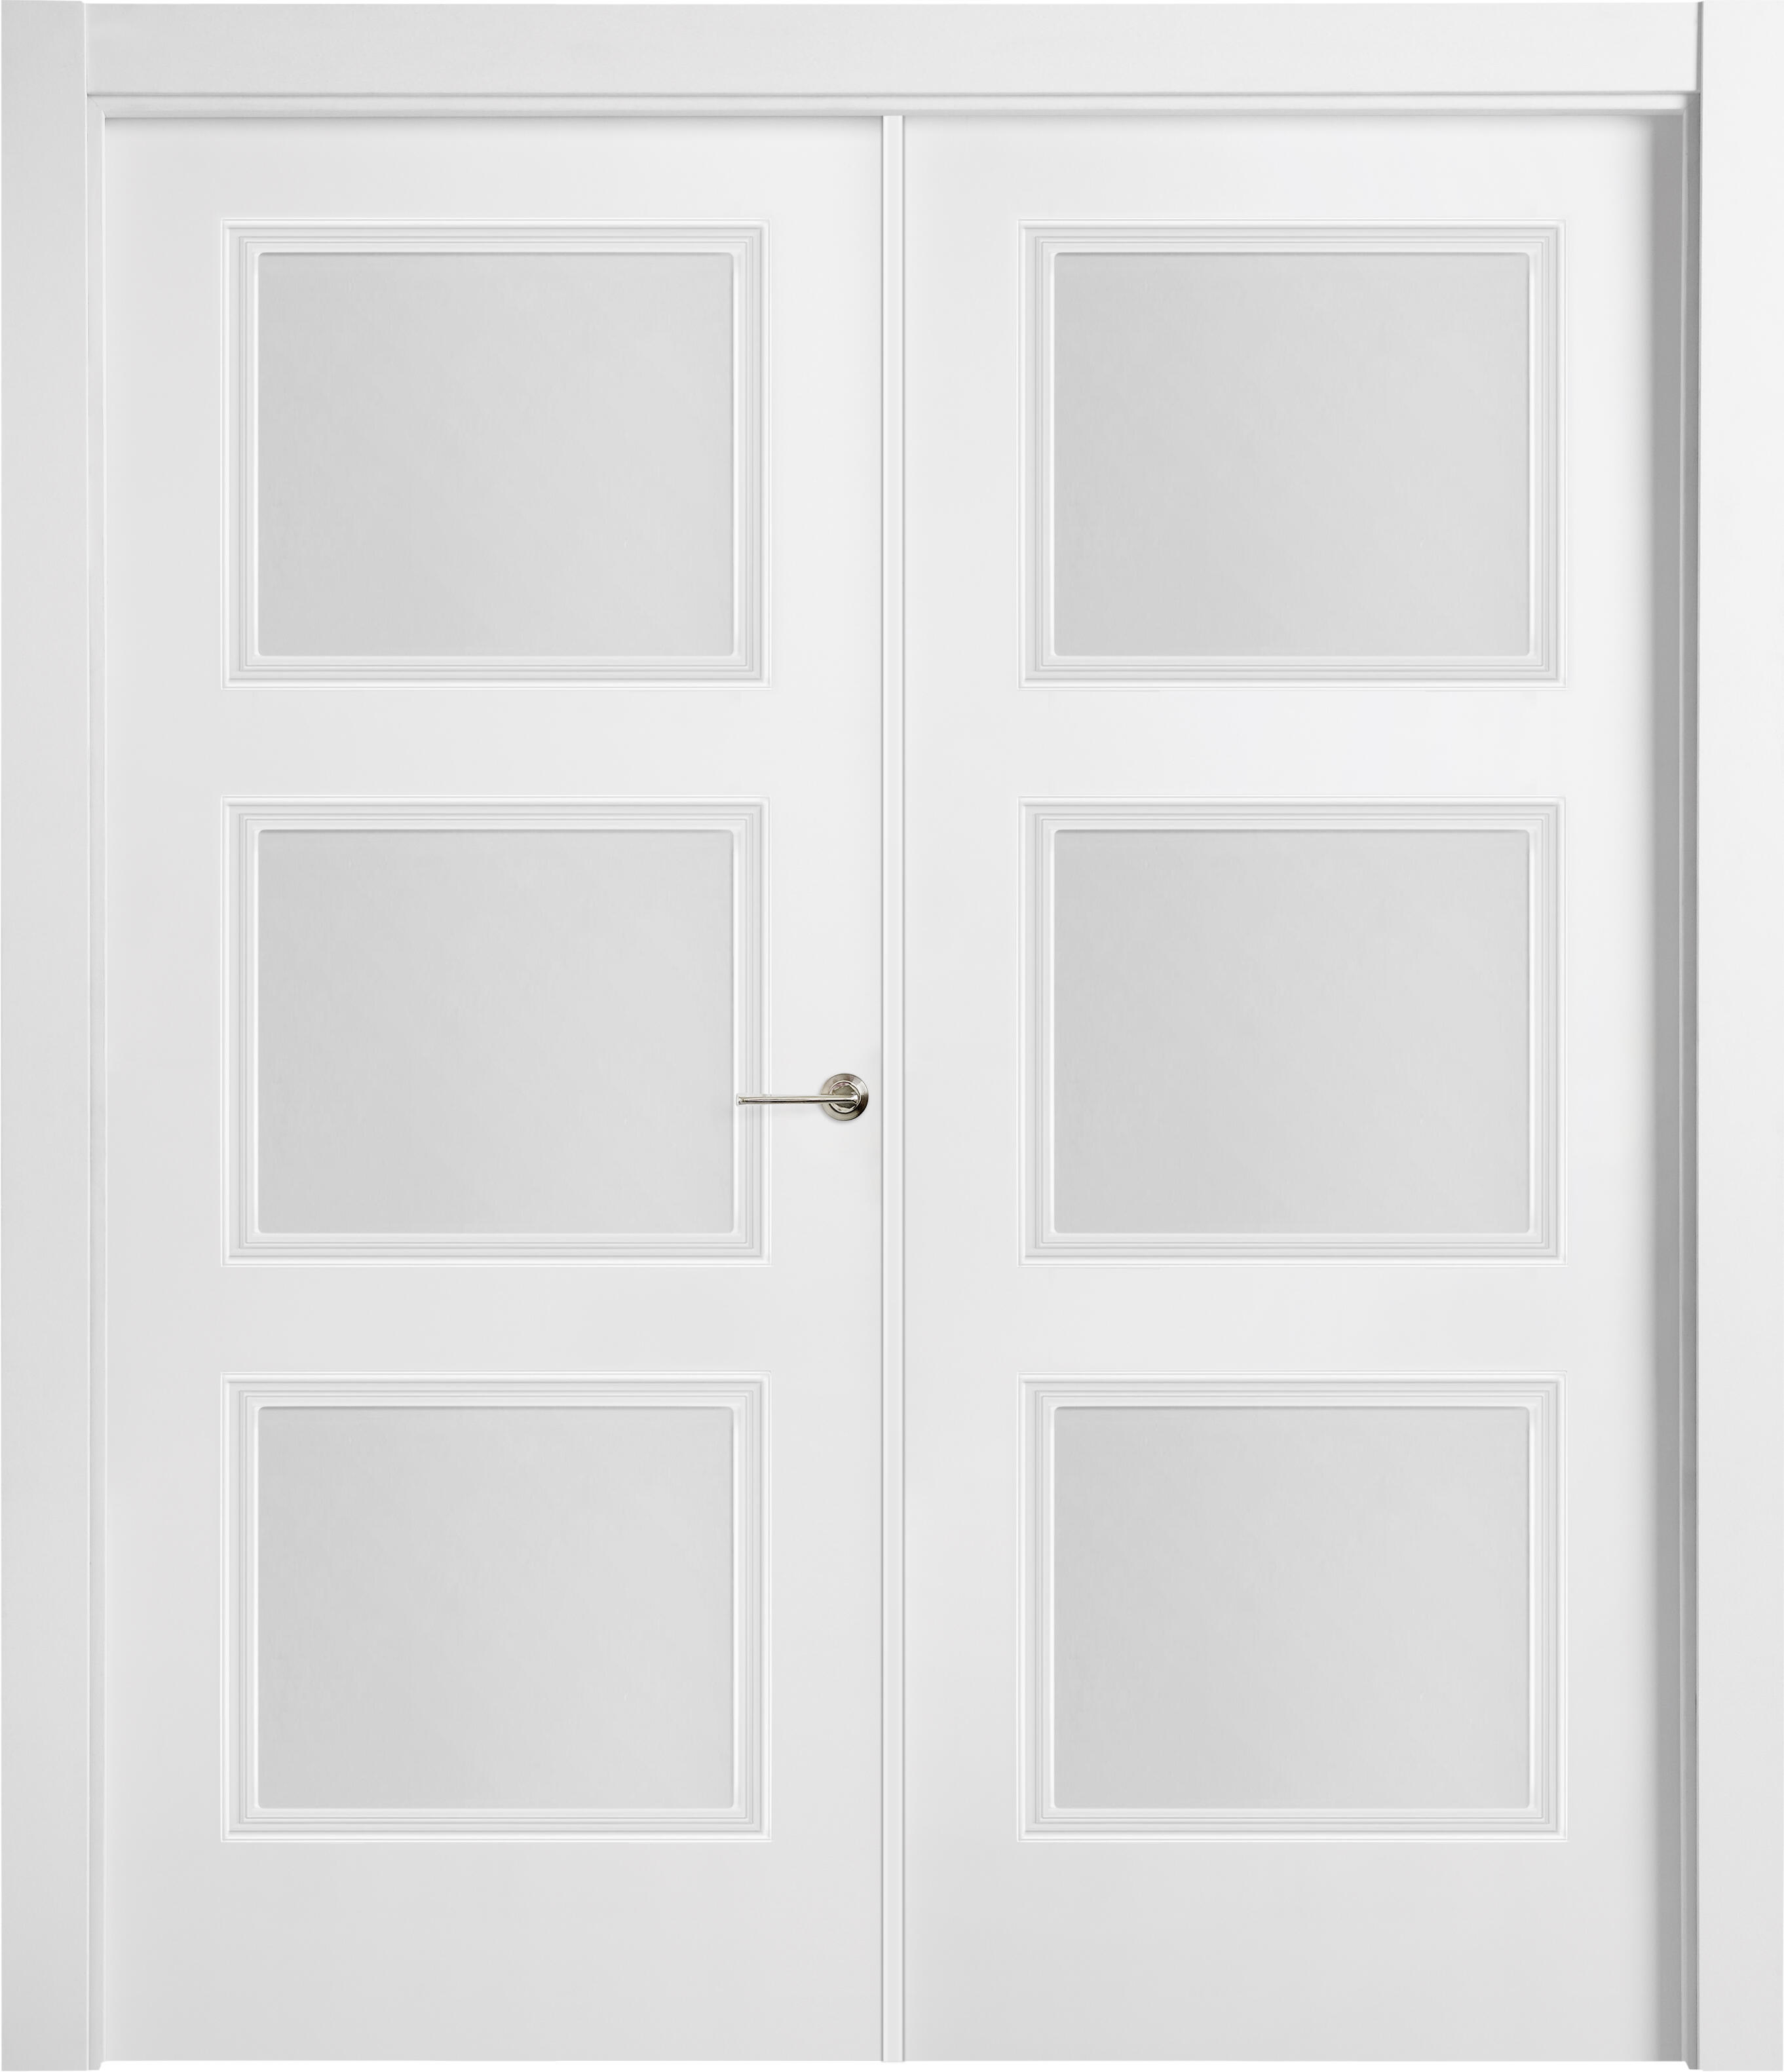 Puerta abatible monaco blanca line plus con cristal blanco derecha de 125 cm